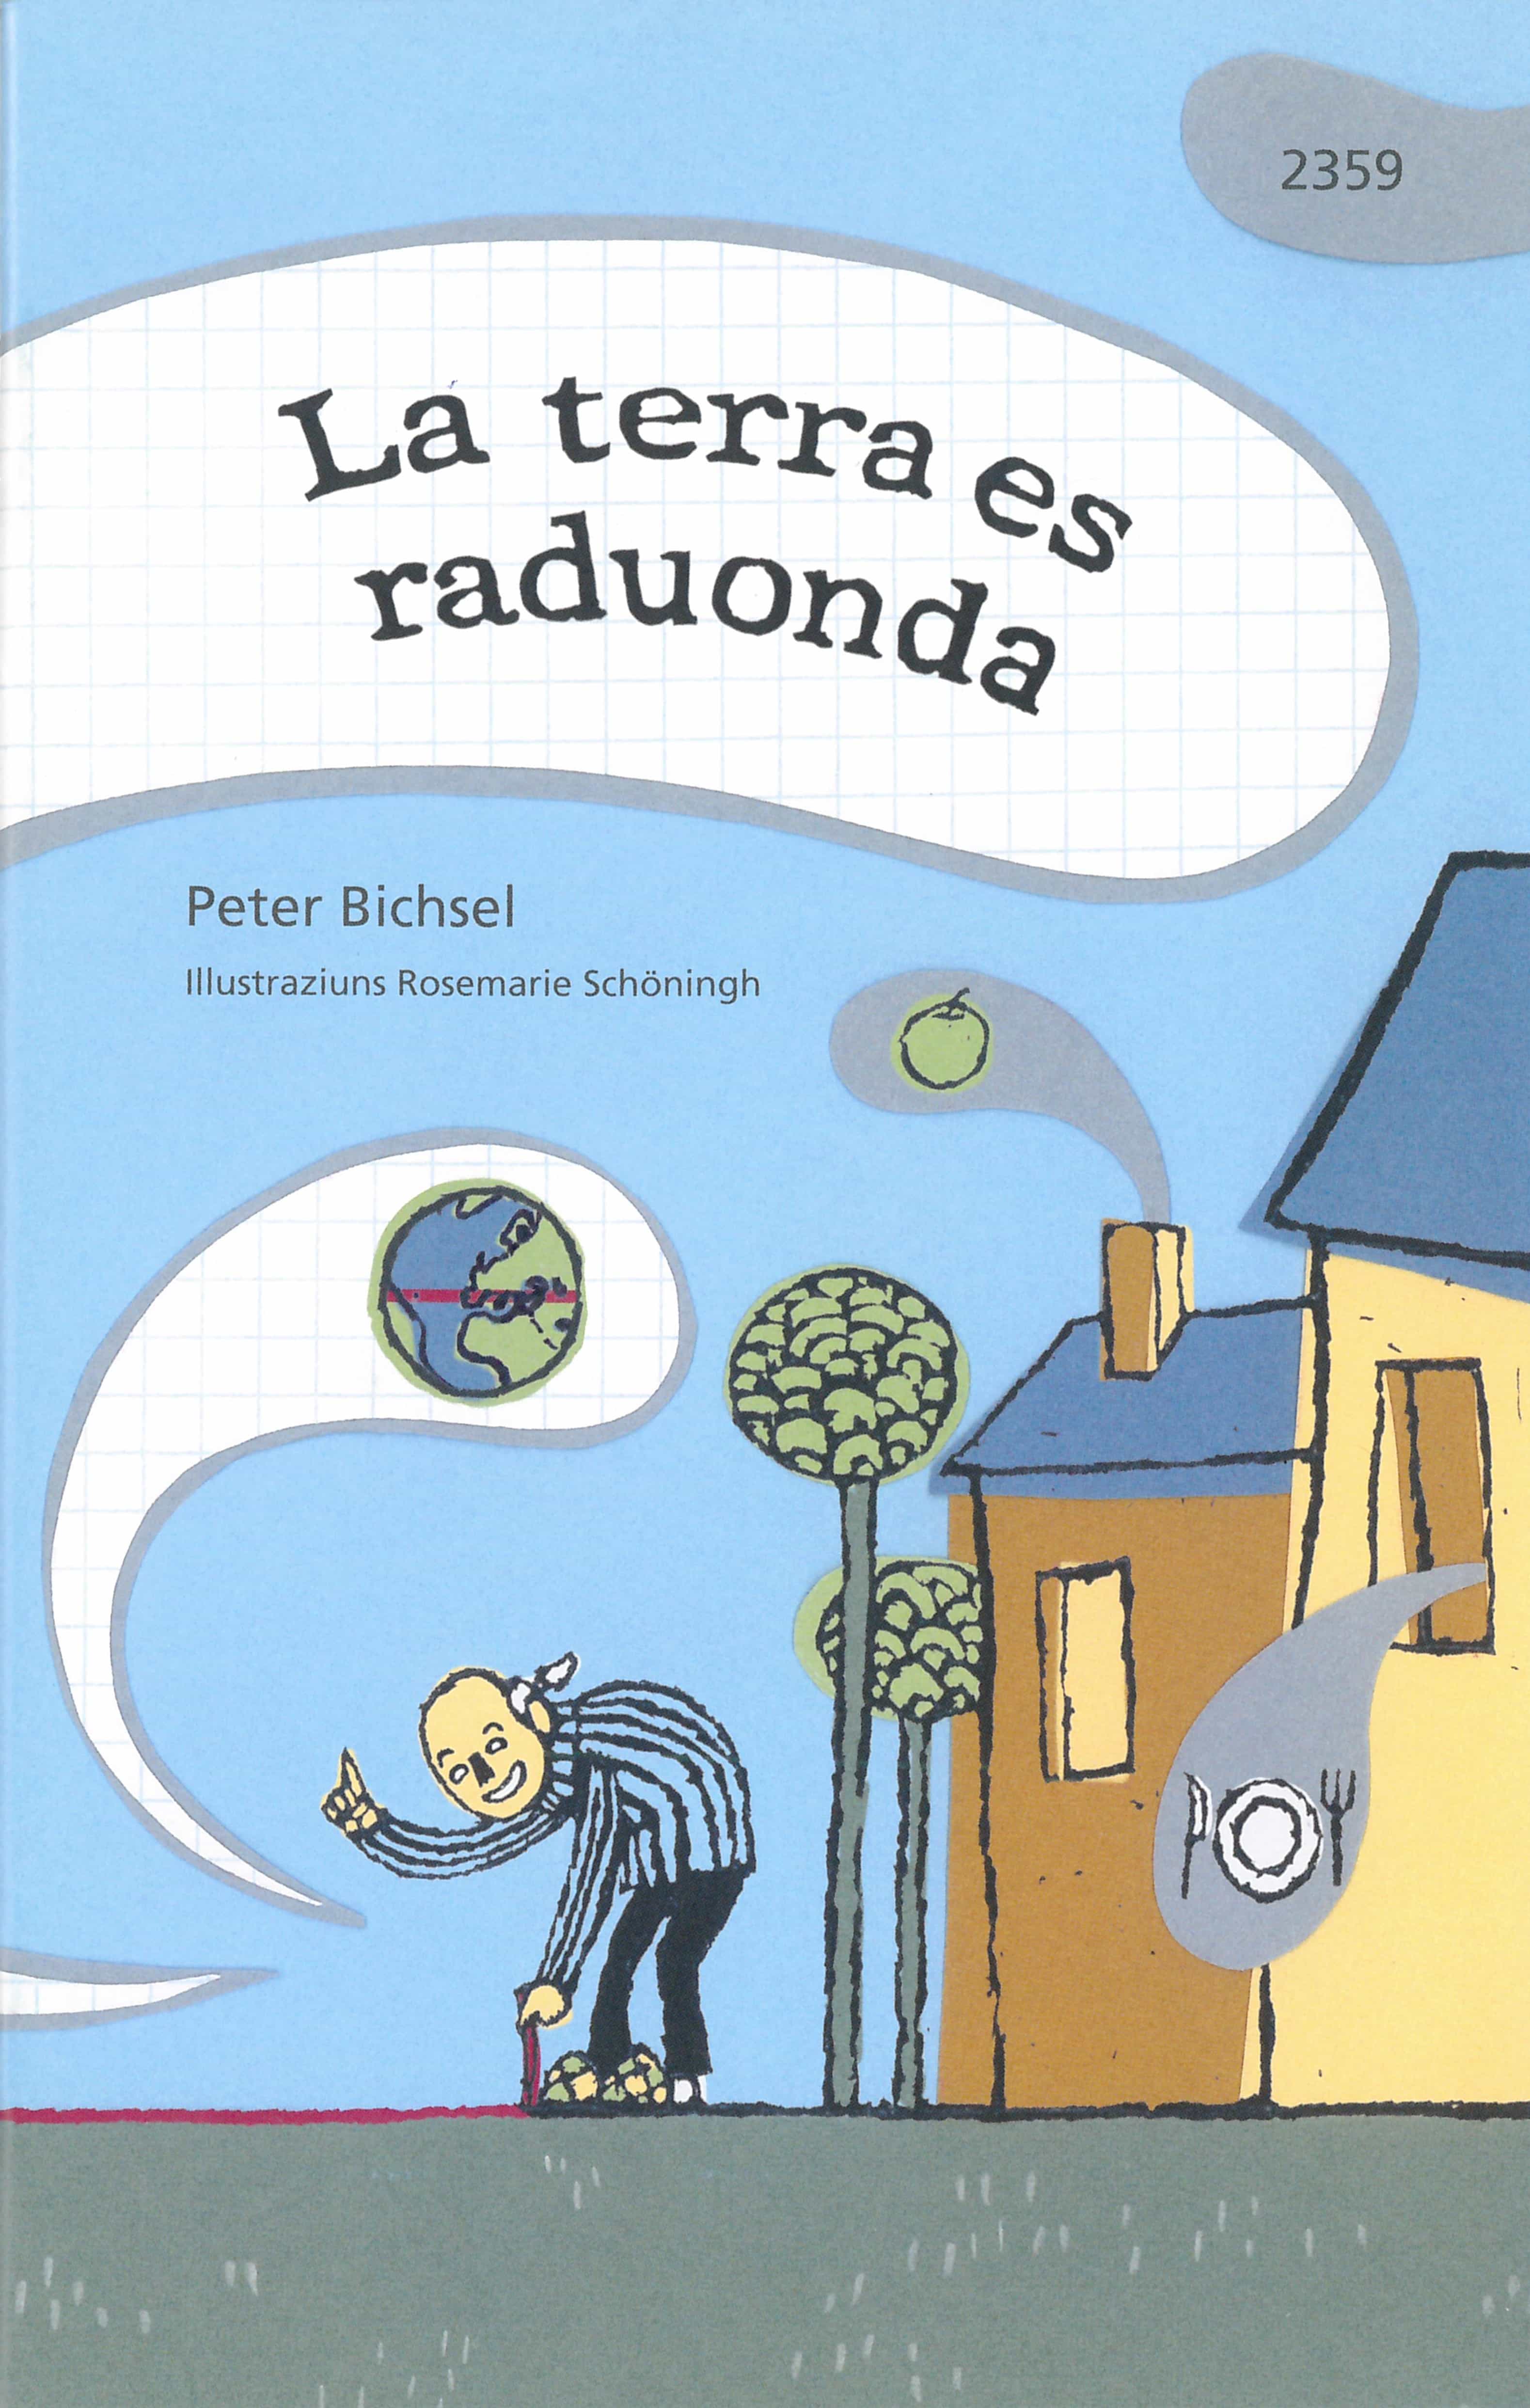 La terra es raduonda, ein Kinderbuch von Peter Bichsel, Illustration von Rosemarie Schoeningh, SJW Verlag, Philosophie